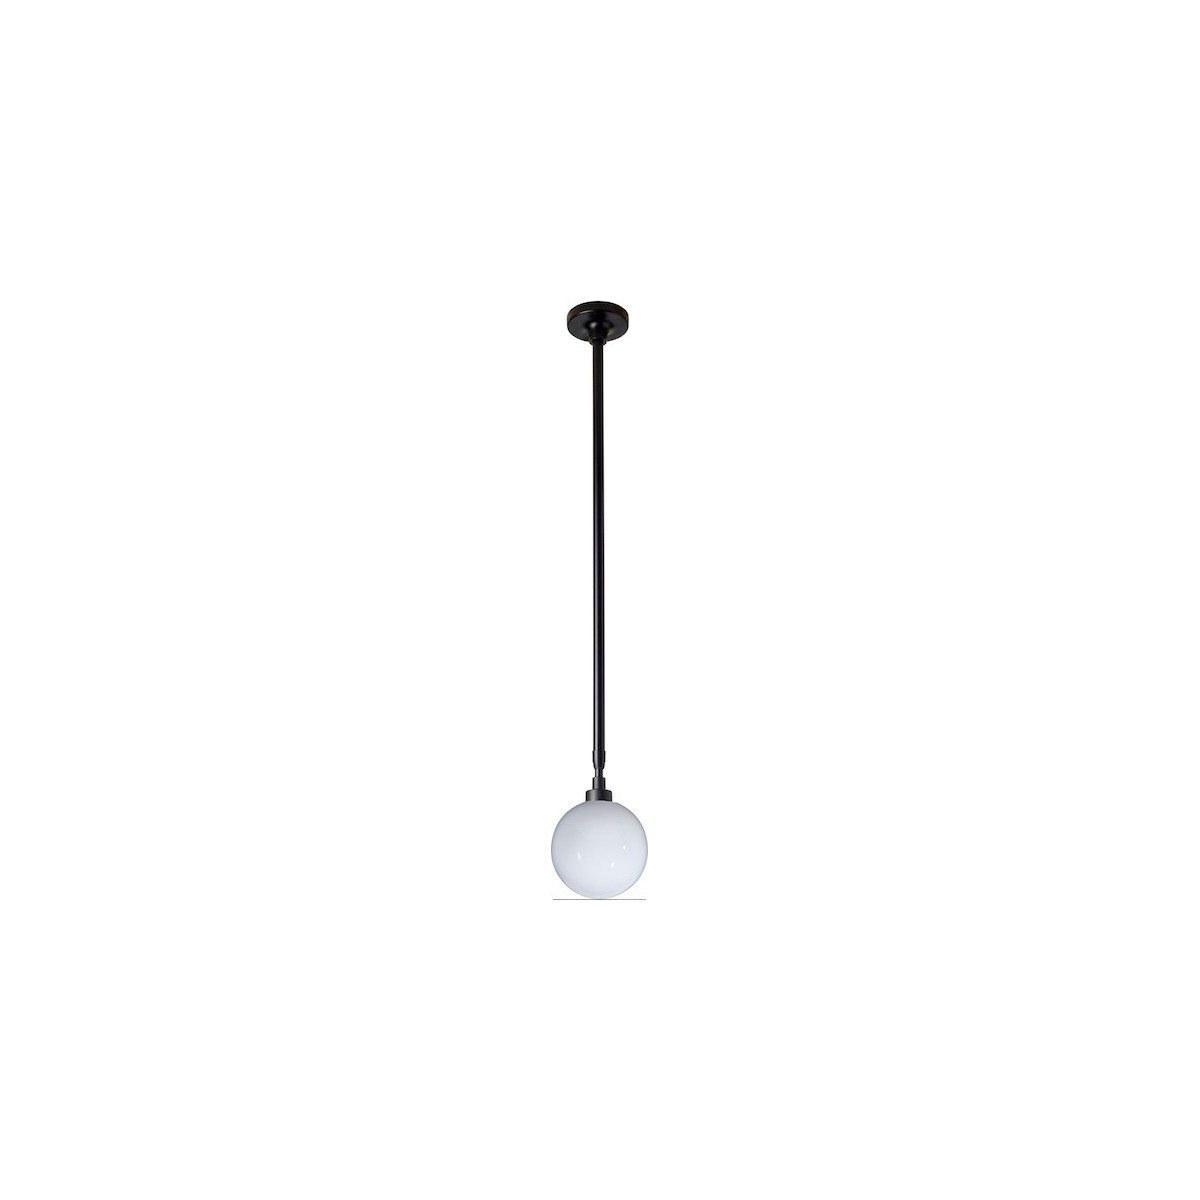 noir / glassball Ø175mm - Gras 300 - suspension